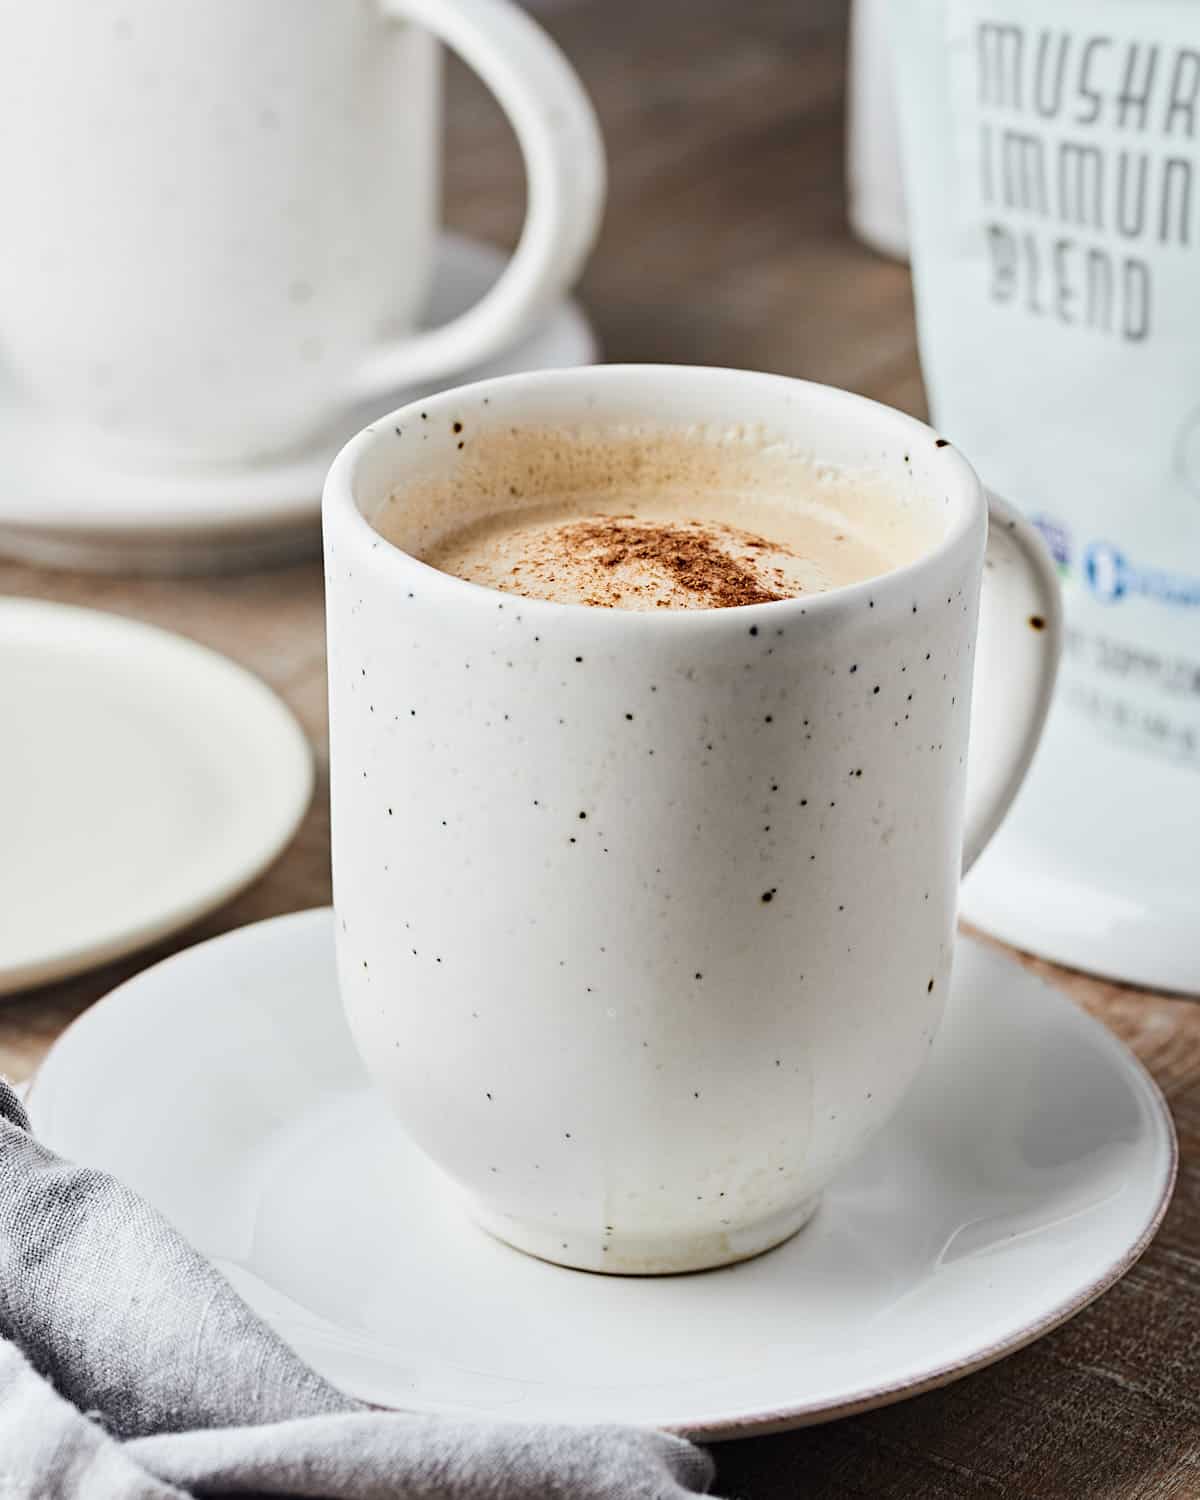 Side view of Vegan Mushroom Latte in Mug with sprinkle of cinnamon.